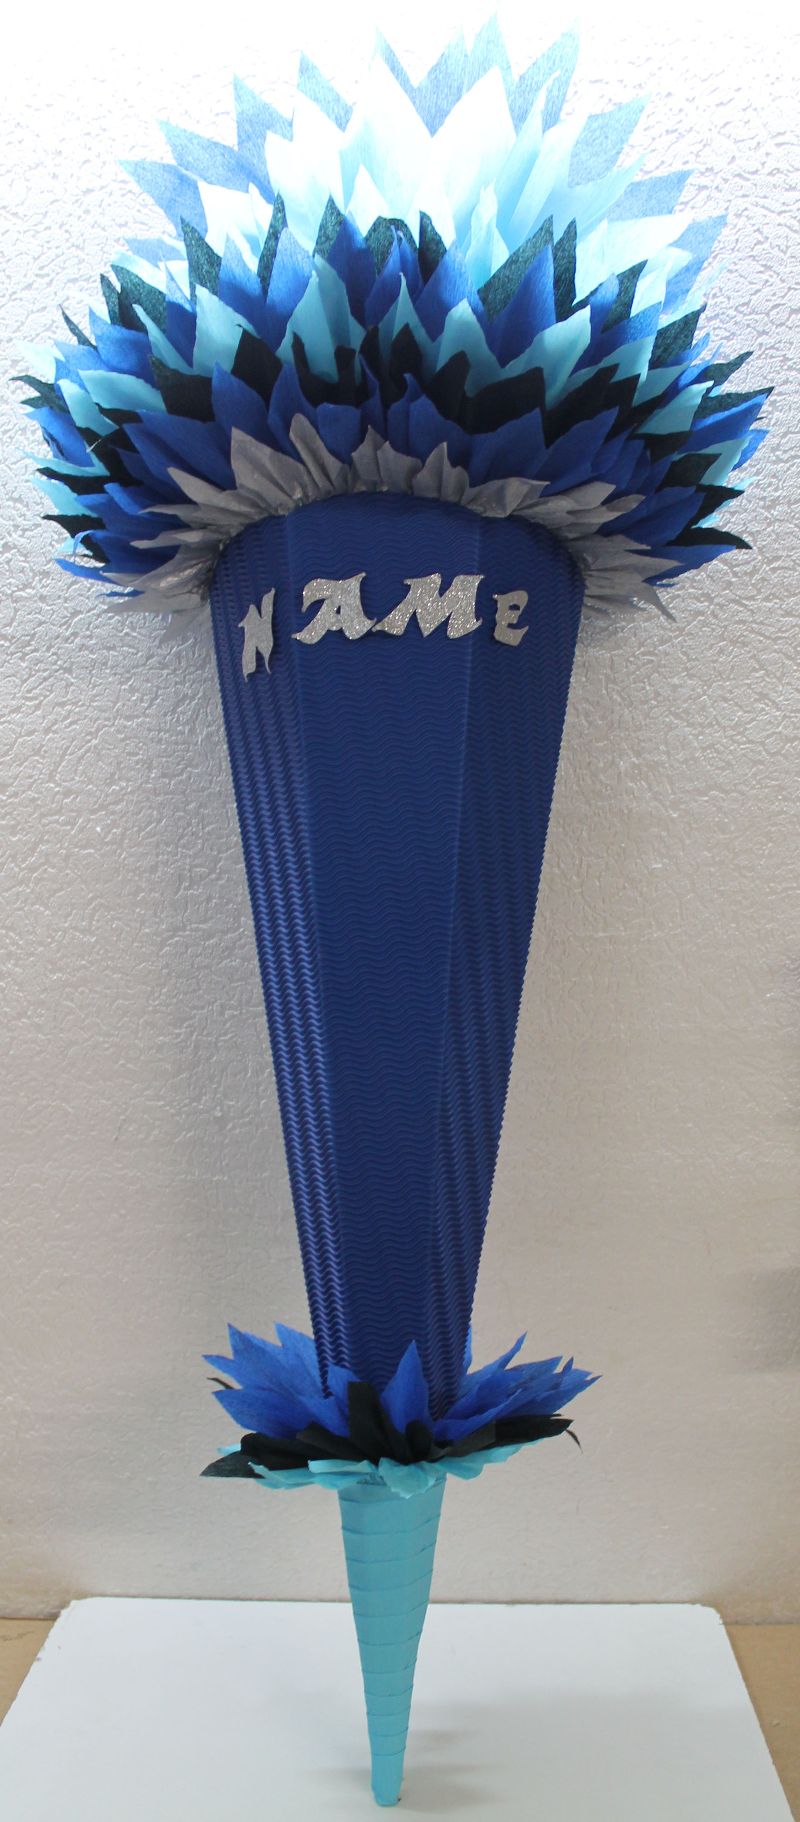  - Schultüte Zuckertüte Rohling zum selbst verzieren Rohling 70 75 80 85 90 100 cm / 1m für Jungen HANDARBEIT blau dunkelblau silber hellblau